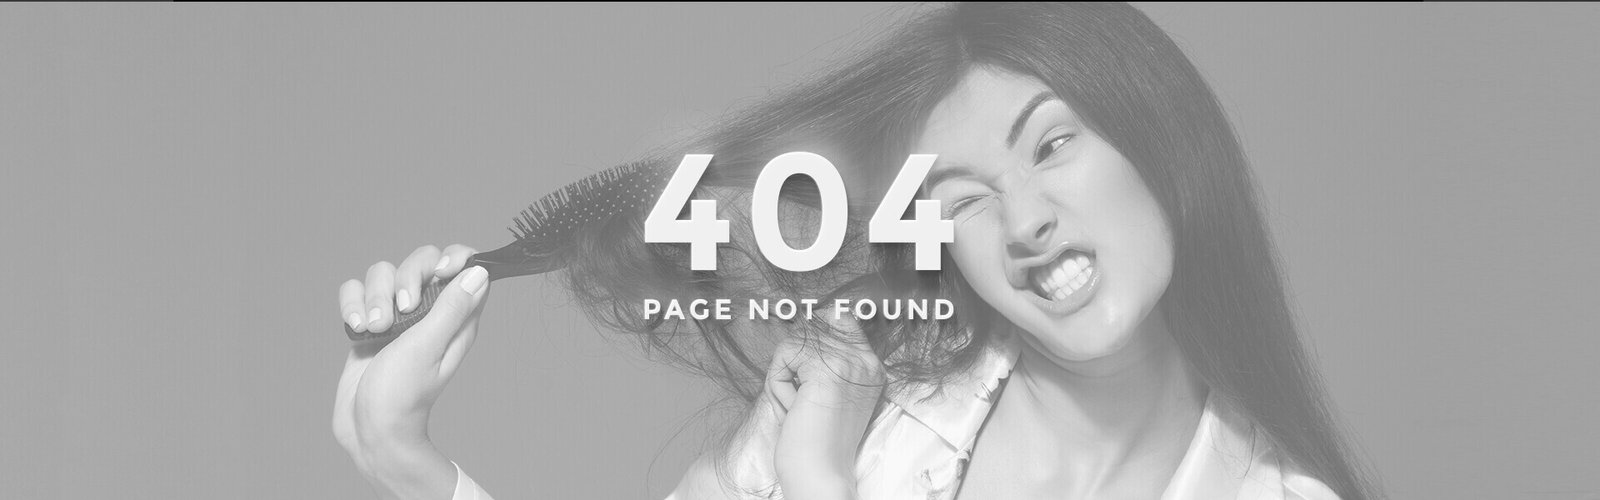 Imagem 404